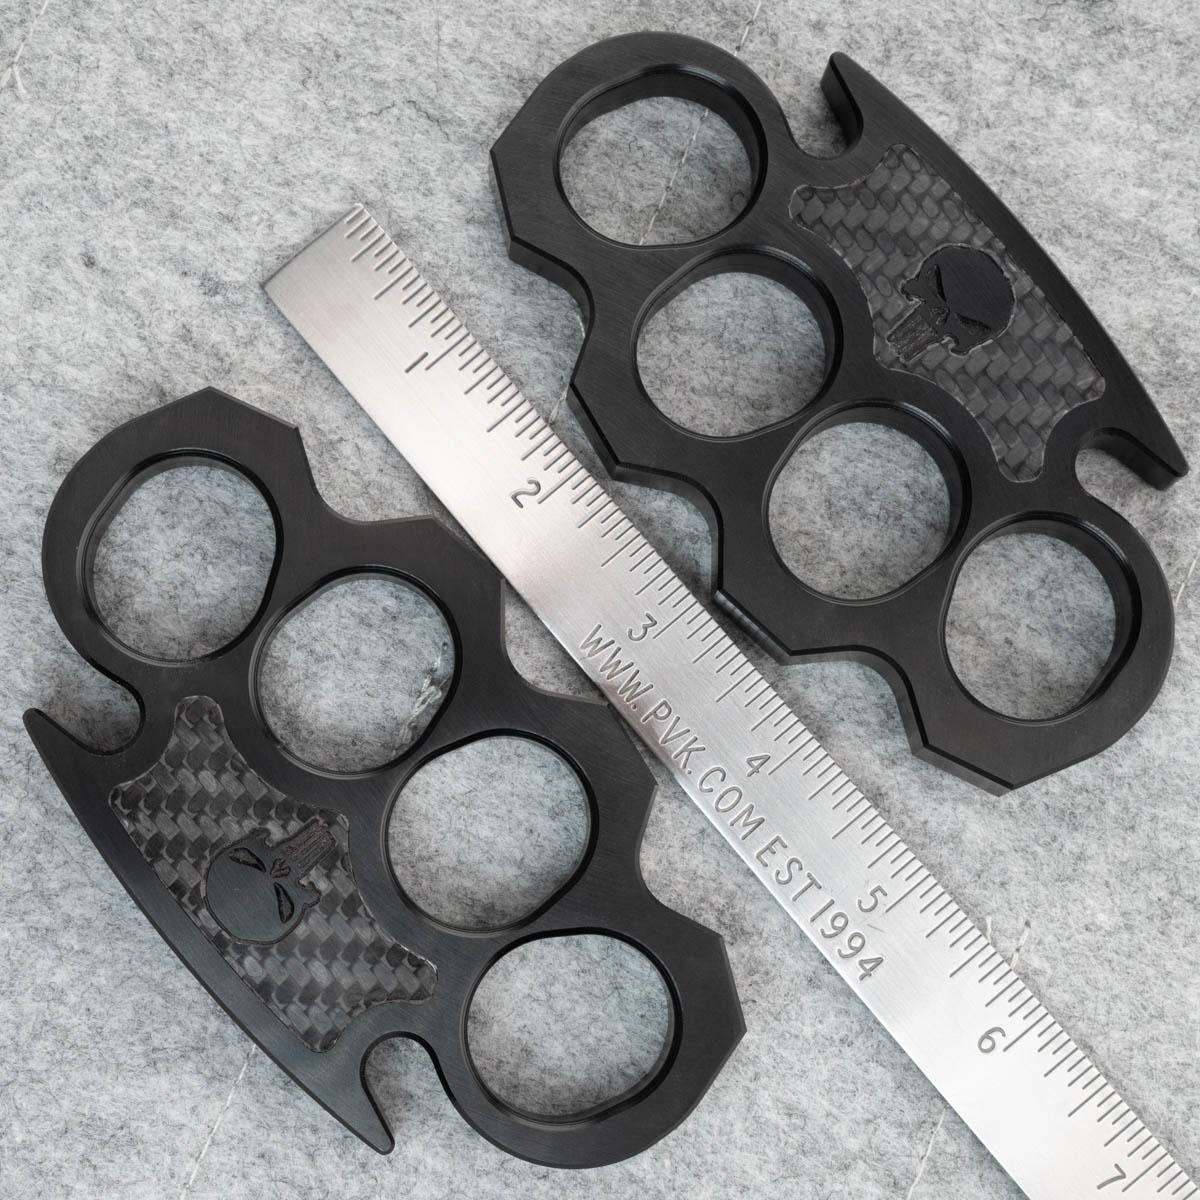 BURN Custom 4 Finger Knuckles Aluminum 1/2 Black w/Black Carbon Fiber  Punisher Skull